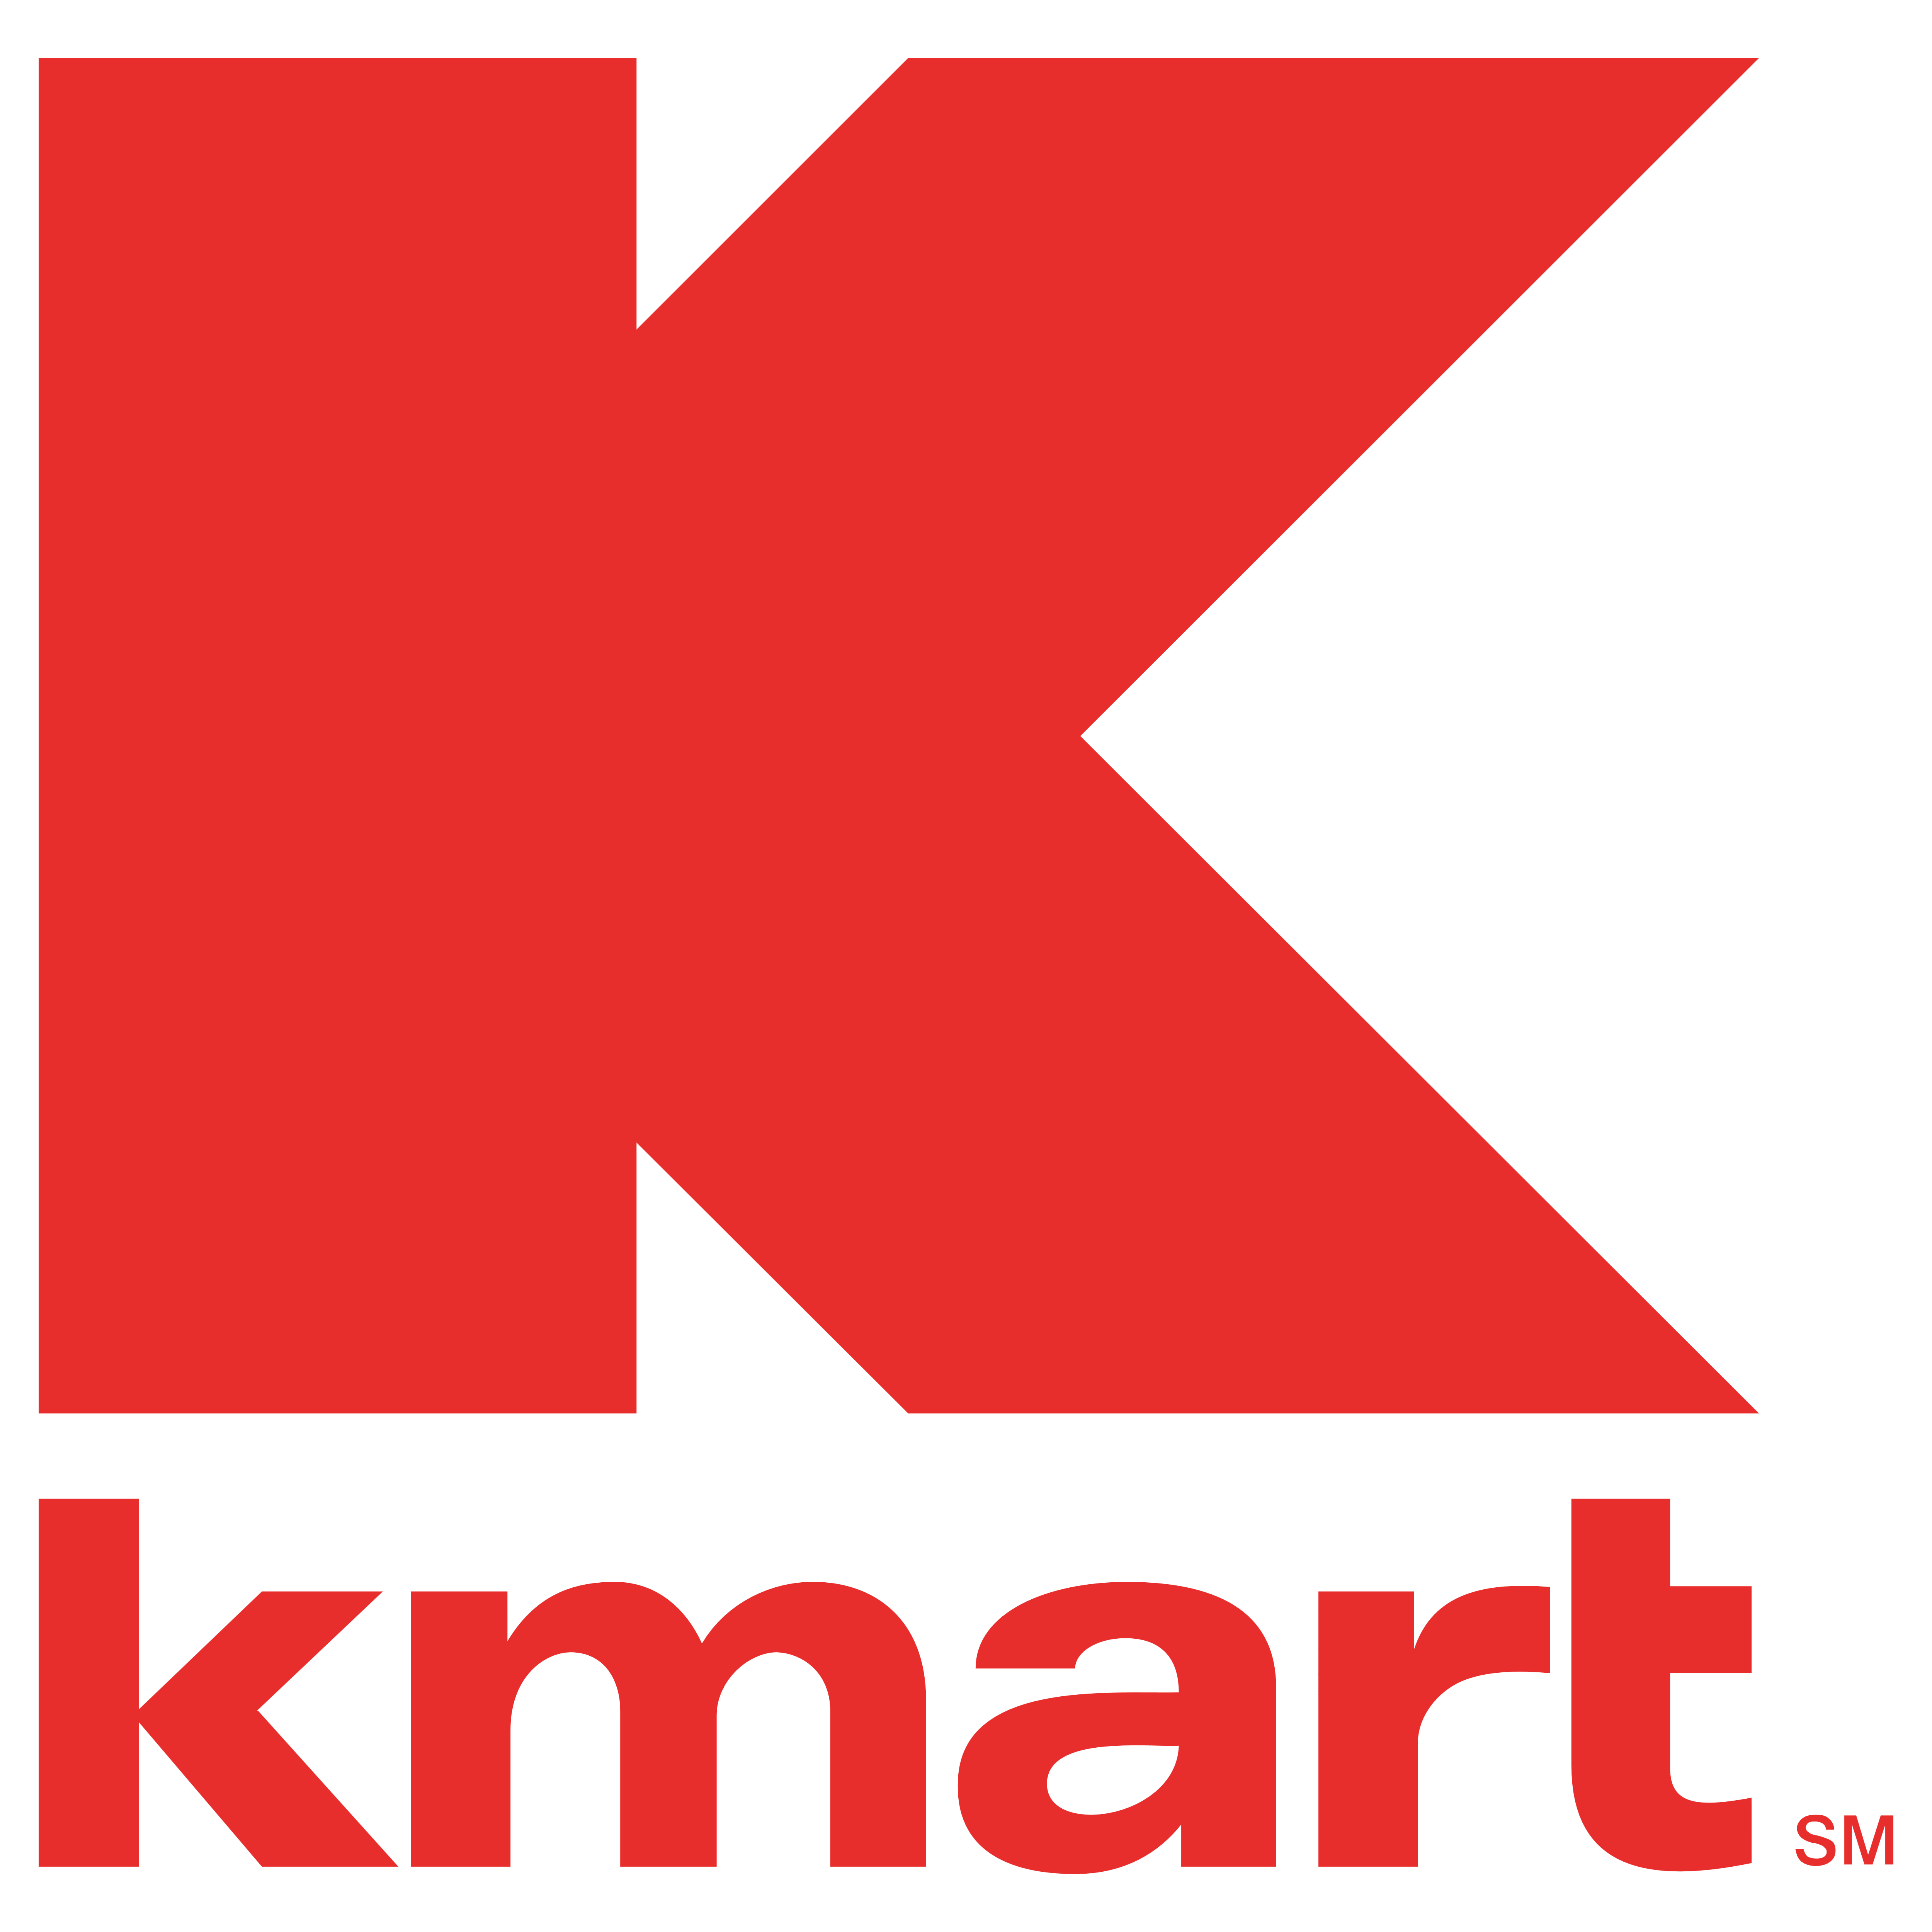 Kmart – Logos Download
